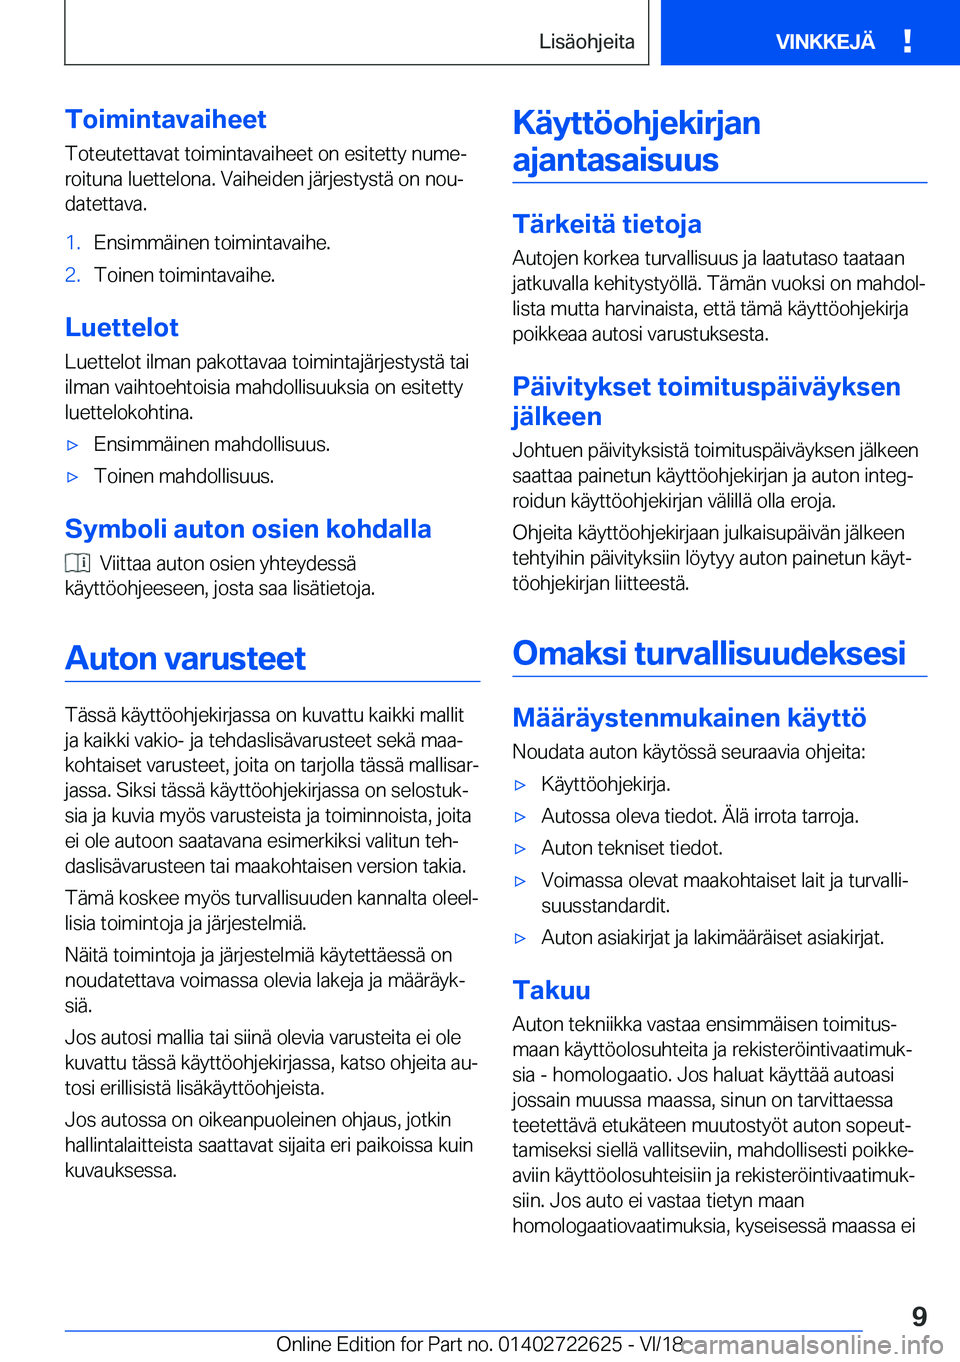 BMW 5 SERIES 2019  Omistajan Käsikirja (in Finnish) �T�o�i�m�i�n�t�a�v�a�i�h�e�e�t�T�o�t�e�u�t�e�t�t�a�v�a�t��t�o�i�m�i�n�t�a�v�a�i�h�e�e�t��o�n��e�s�i�t�e�t�t�y��n�u�m�ej
�r�o�i�t�u�n�a��l�u�e�t�t�e�l�o�n�a�.��V�a�i�h�e�i�d�e�n��j�